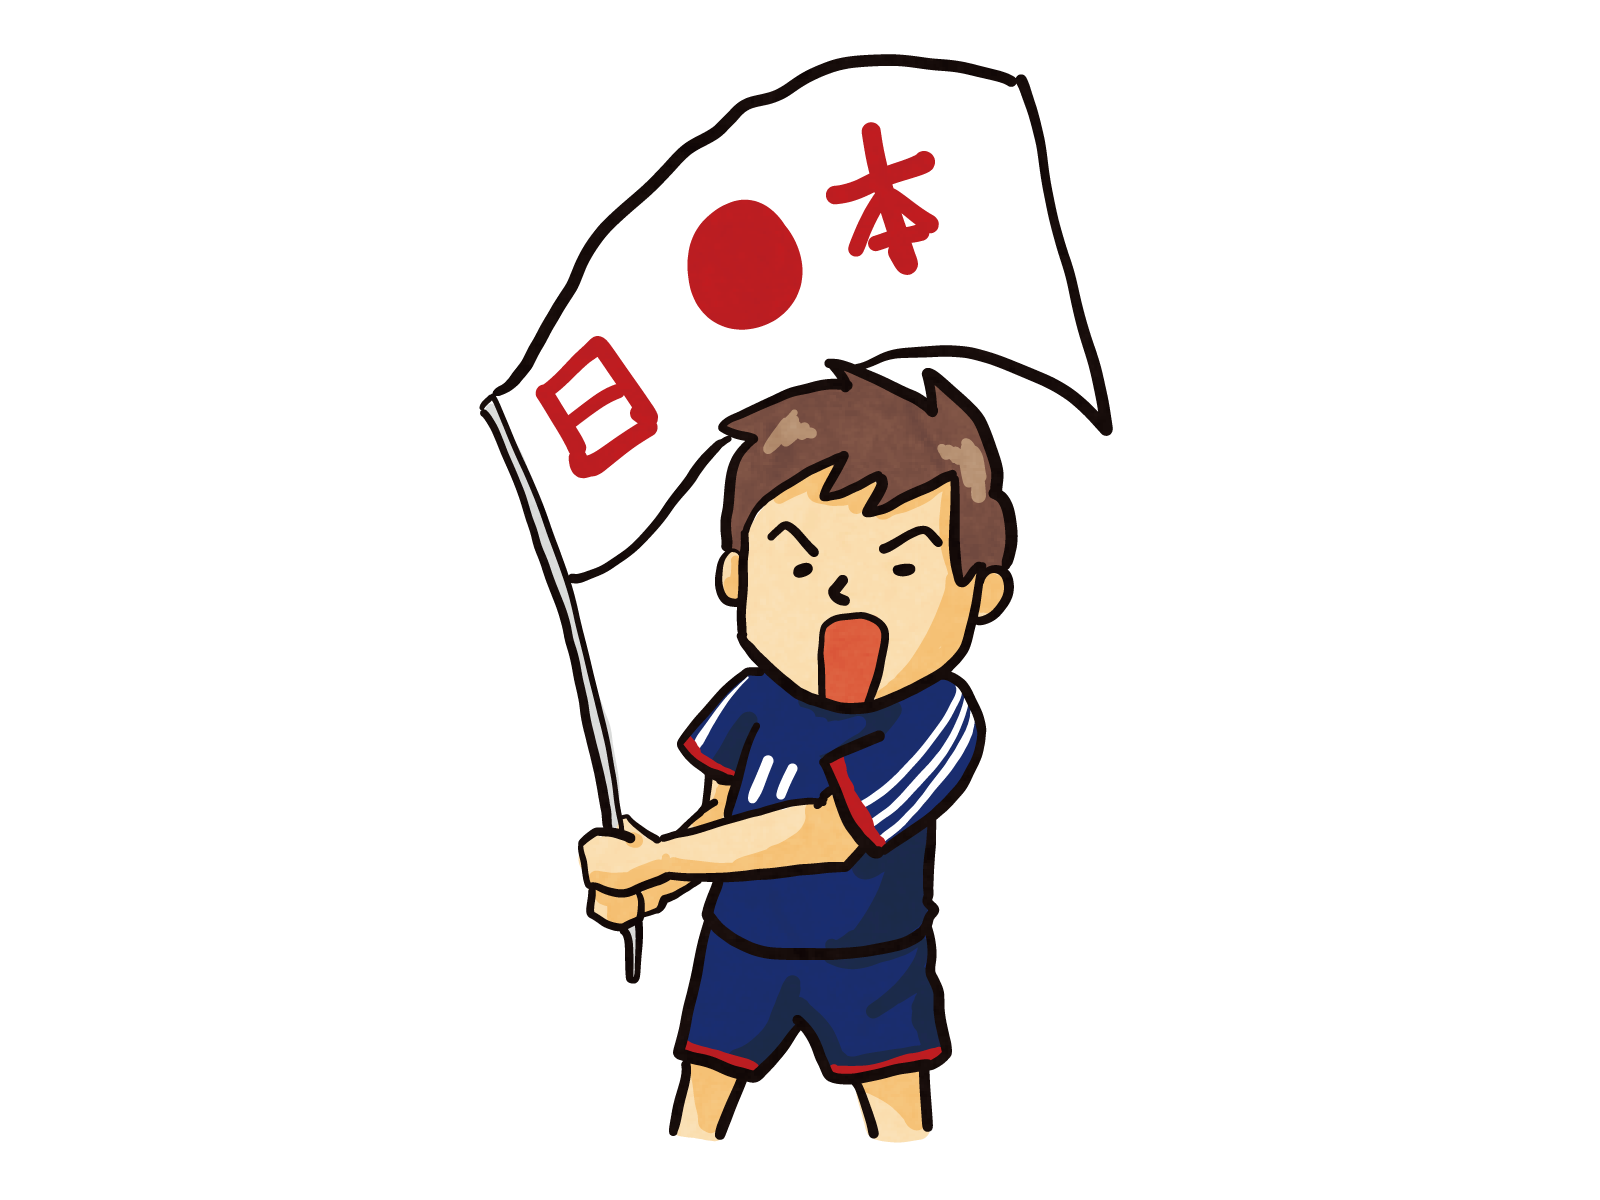 サッカー日本代表を応援する男性ファンのイラスト 無料で使える